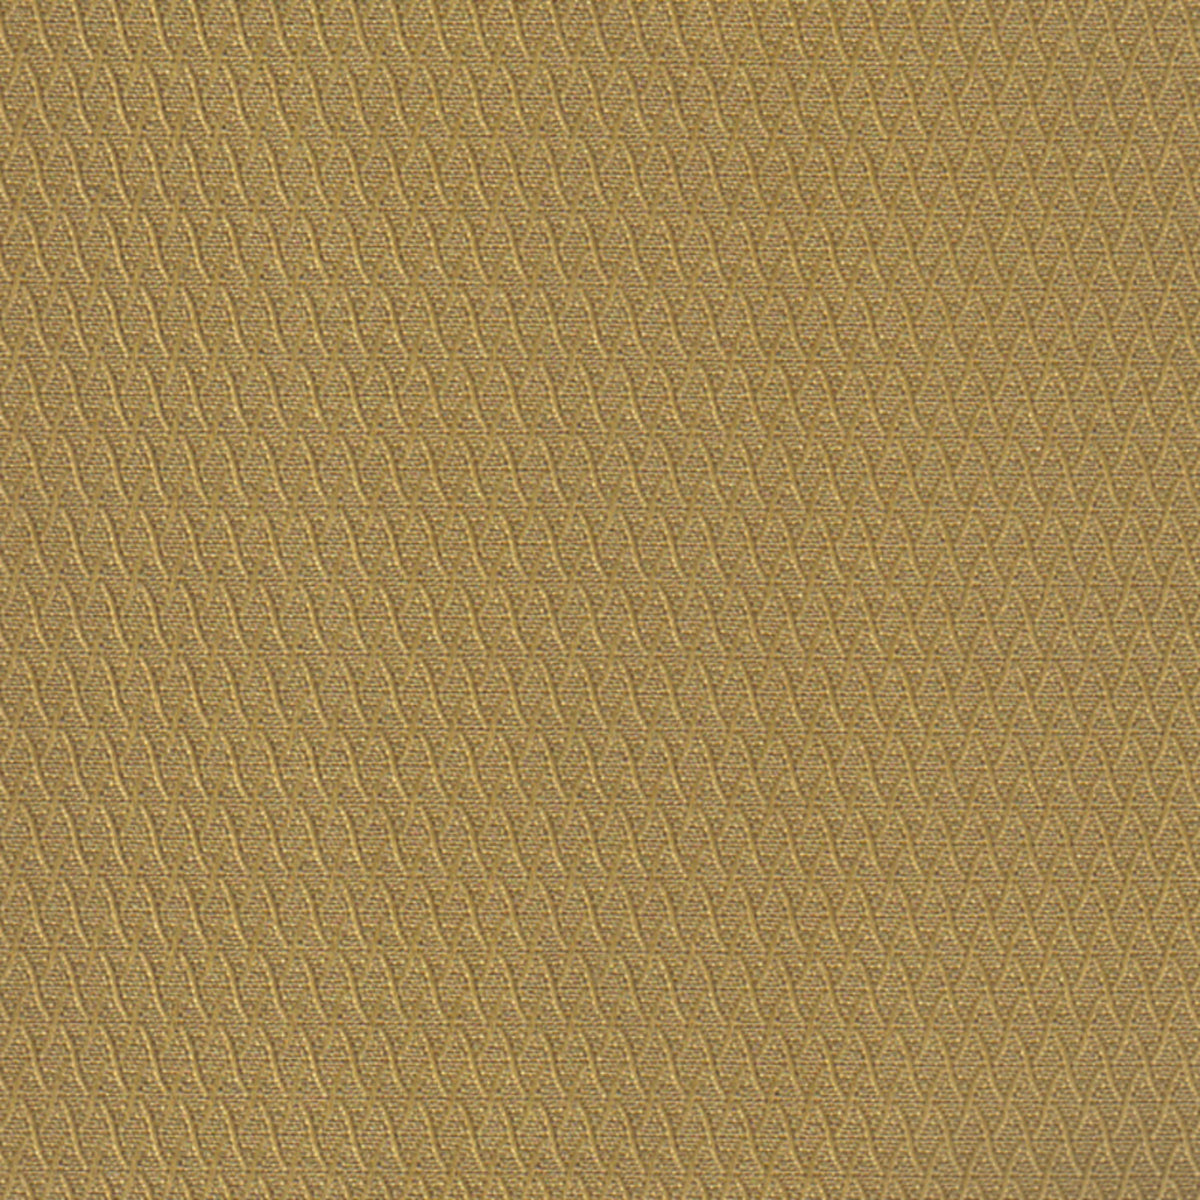 Illusion Gold Fabric |#| 